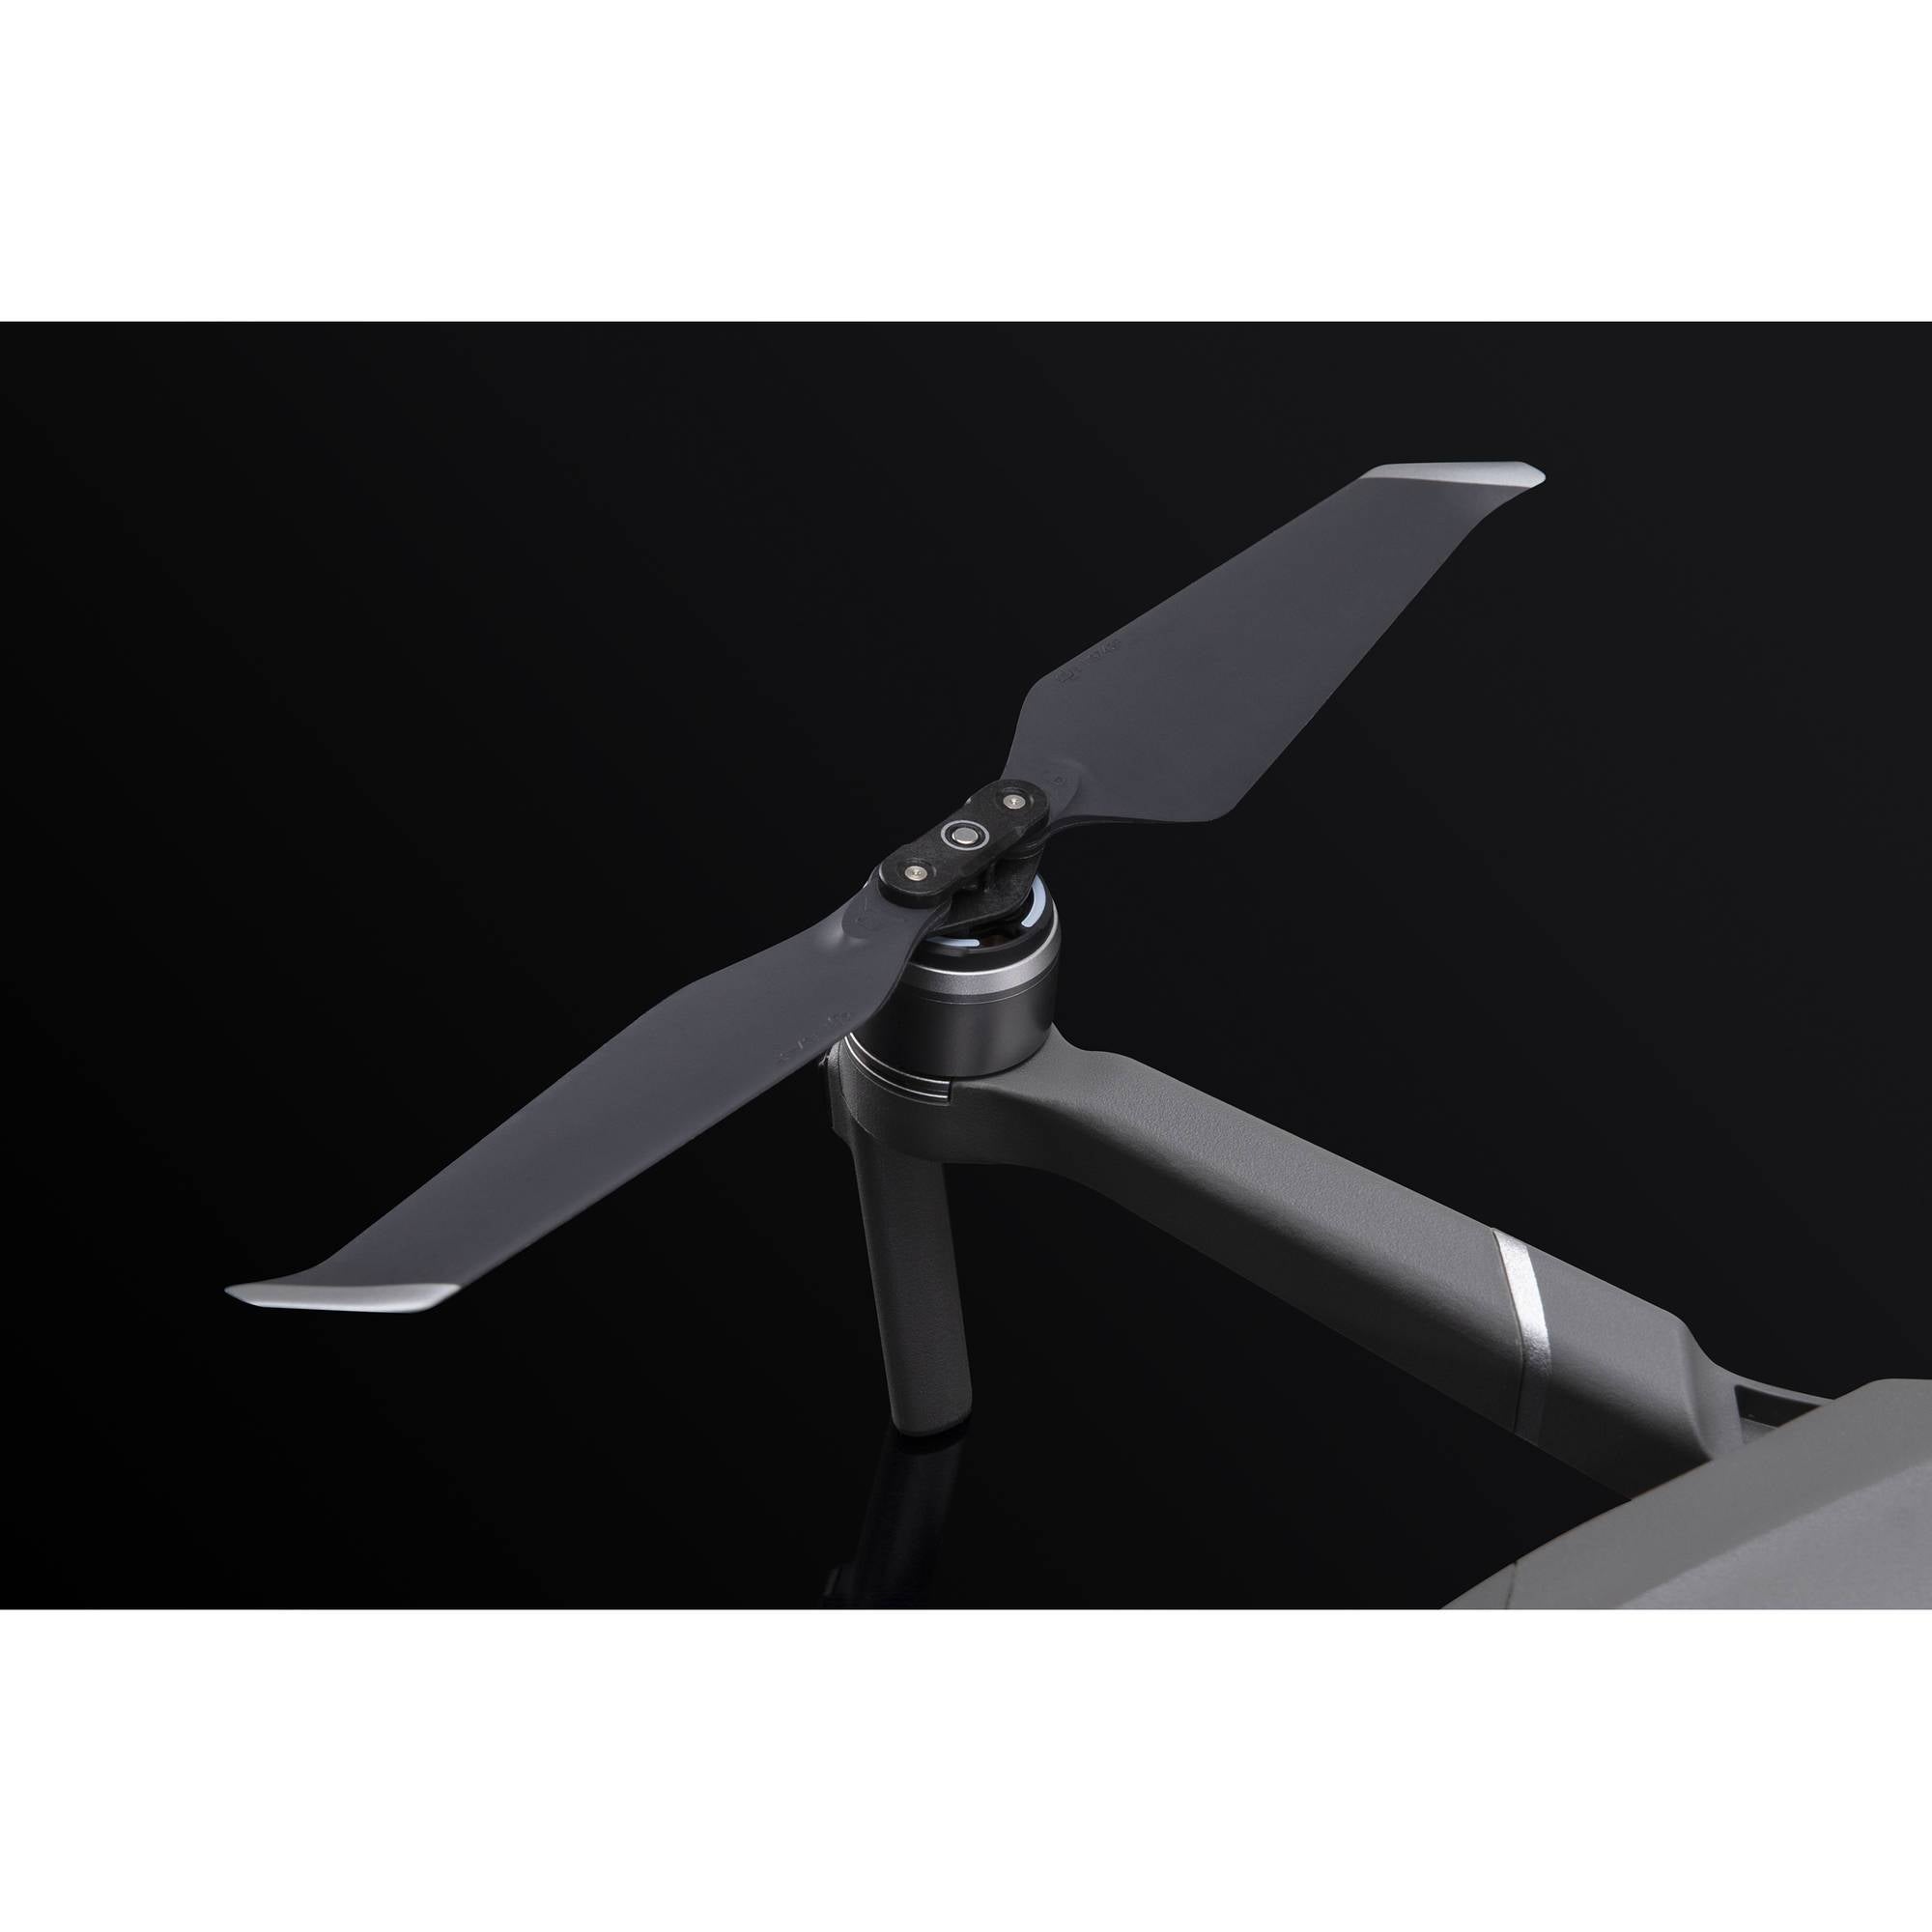 Mavic 2 Low-Noise Propellers - Cloud City Drones